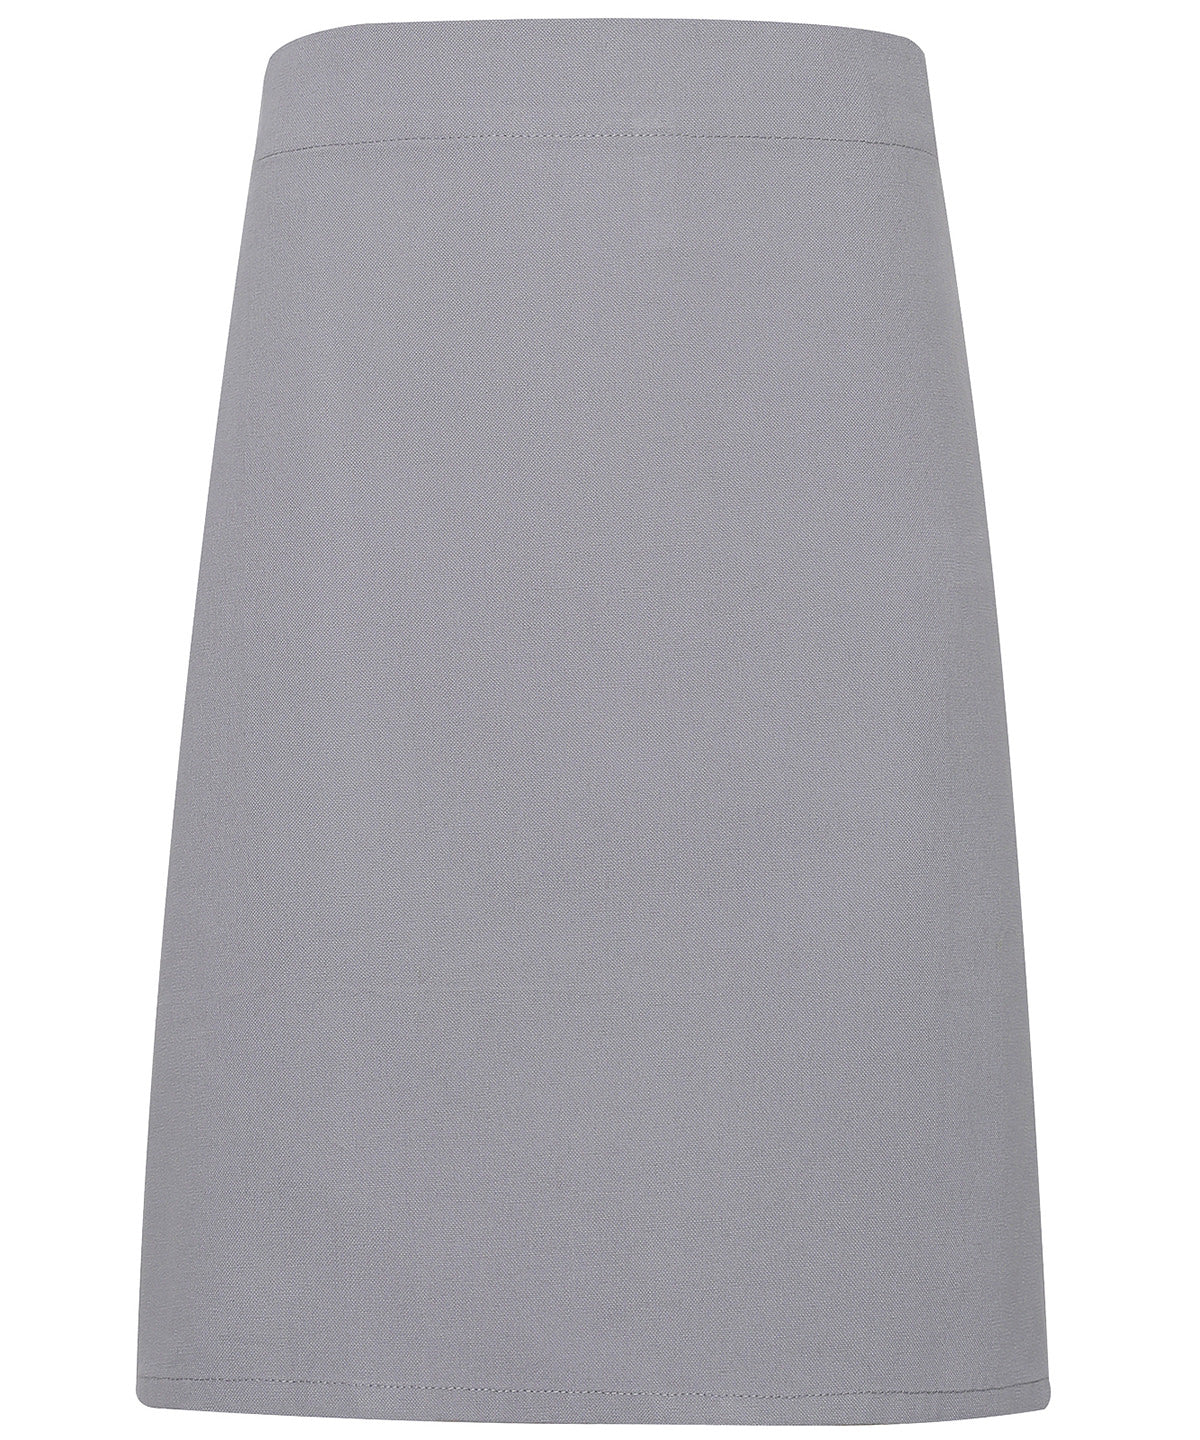 Calibre heavy cotton canvas waist apron